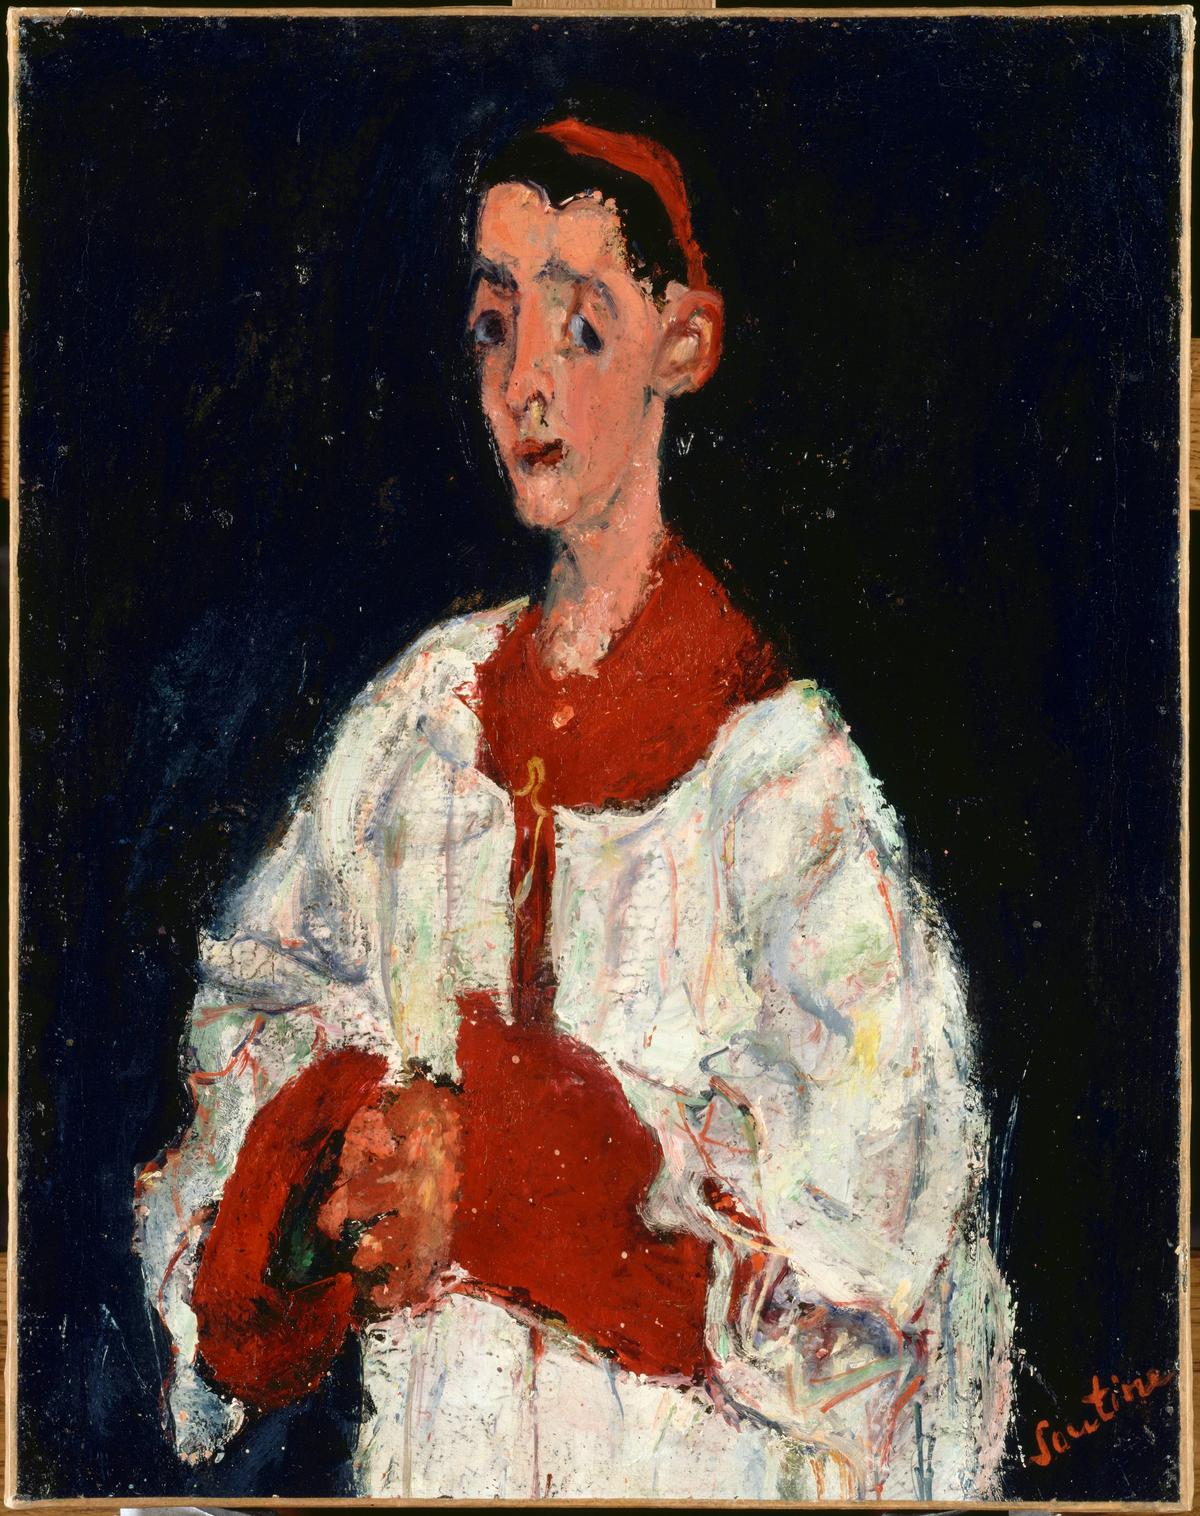 Chaïm Soutine, Enfant de choeur, 1927-1928, huile sur toile, musée de l’Orangerie, Paris. © RMN-Grand Palais (Musée de l’Orangerie)/Hervé Lewandowski